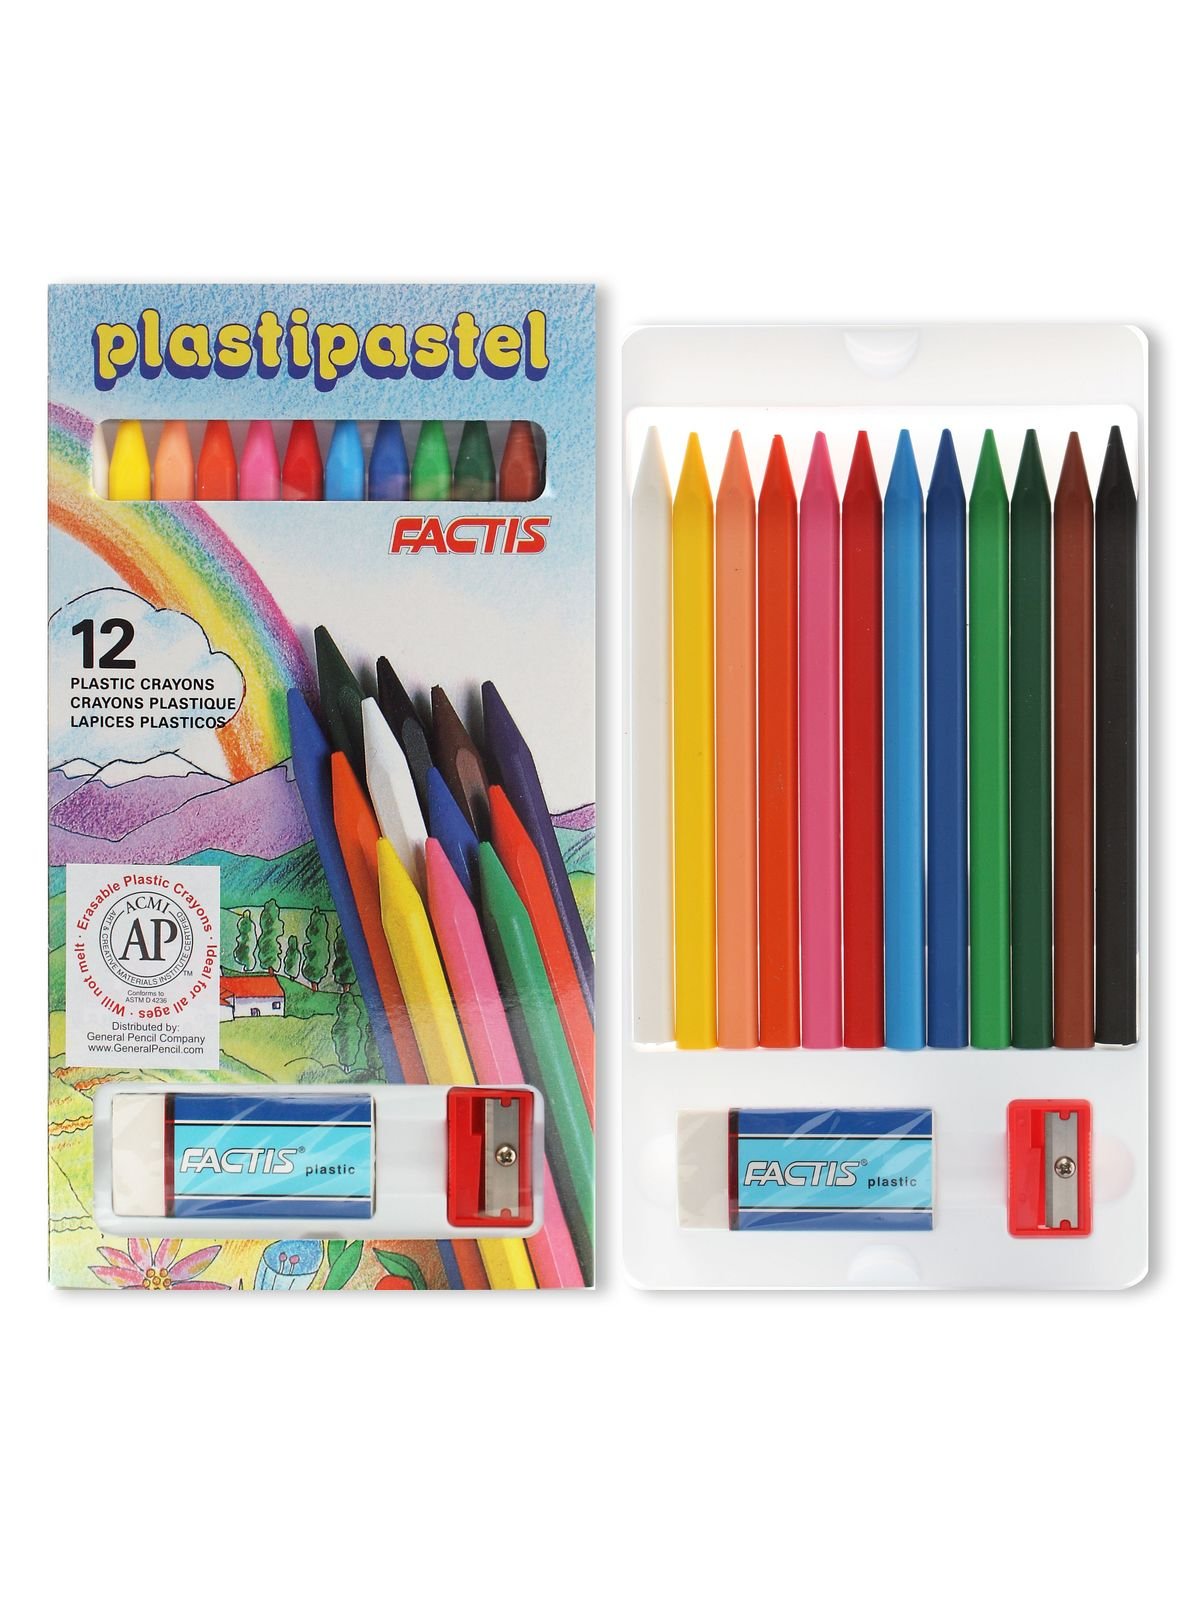 General's - Factis Plasti-Pastels - 12 Color Set